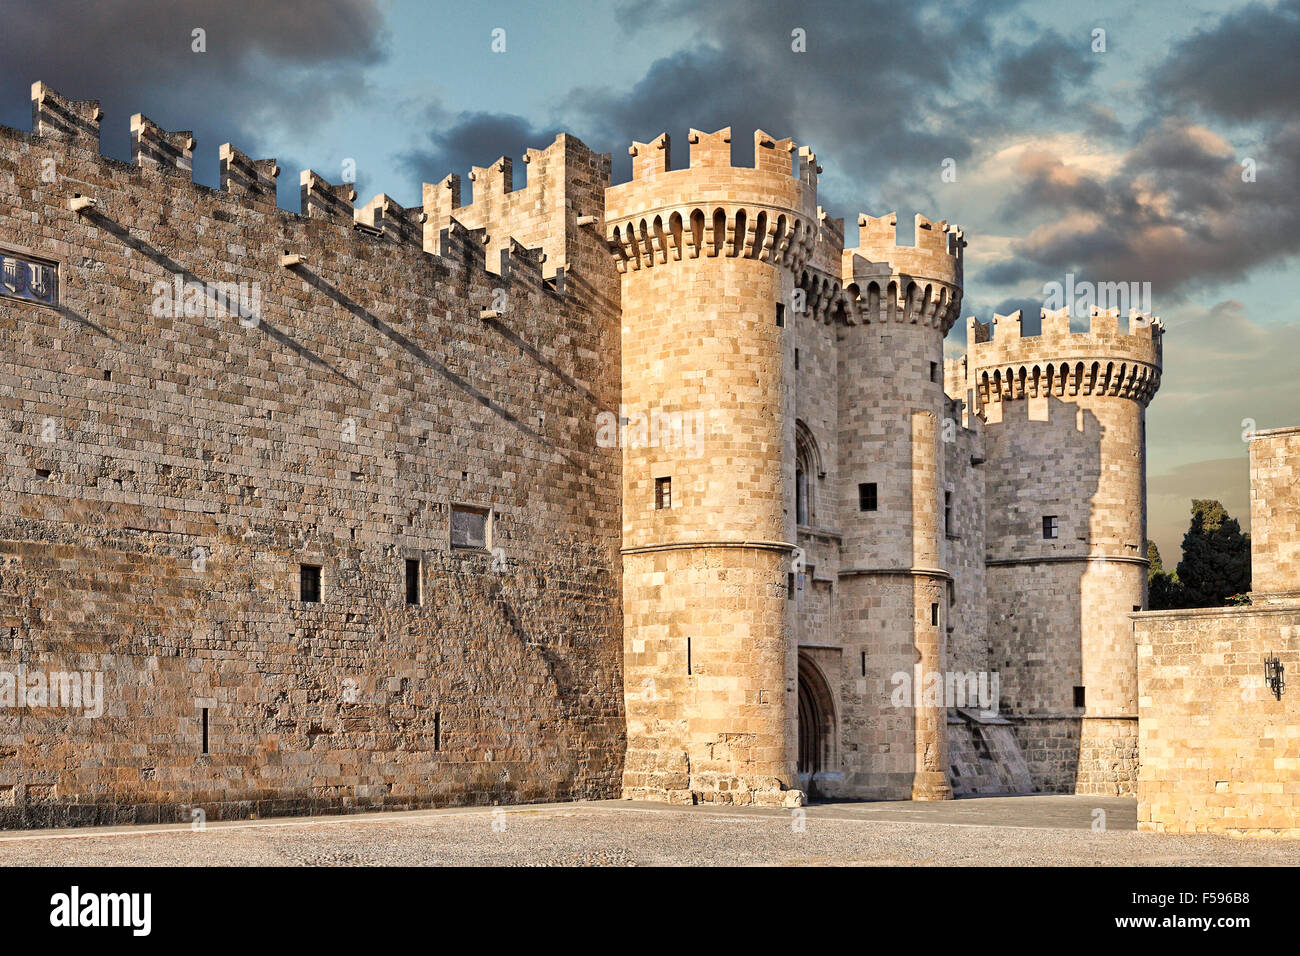 Le Palais du Grand Maître des Chevaliers est un château médiéval dans la vieille ville de Rhodes, Grèce Banque D'Images